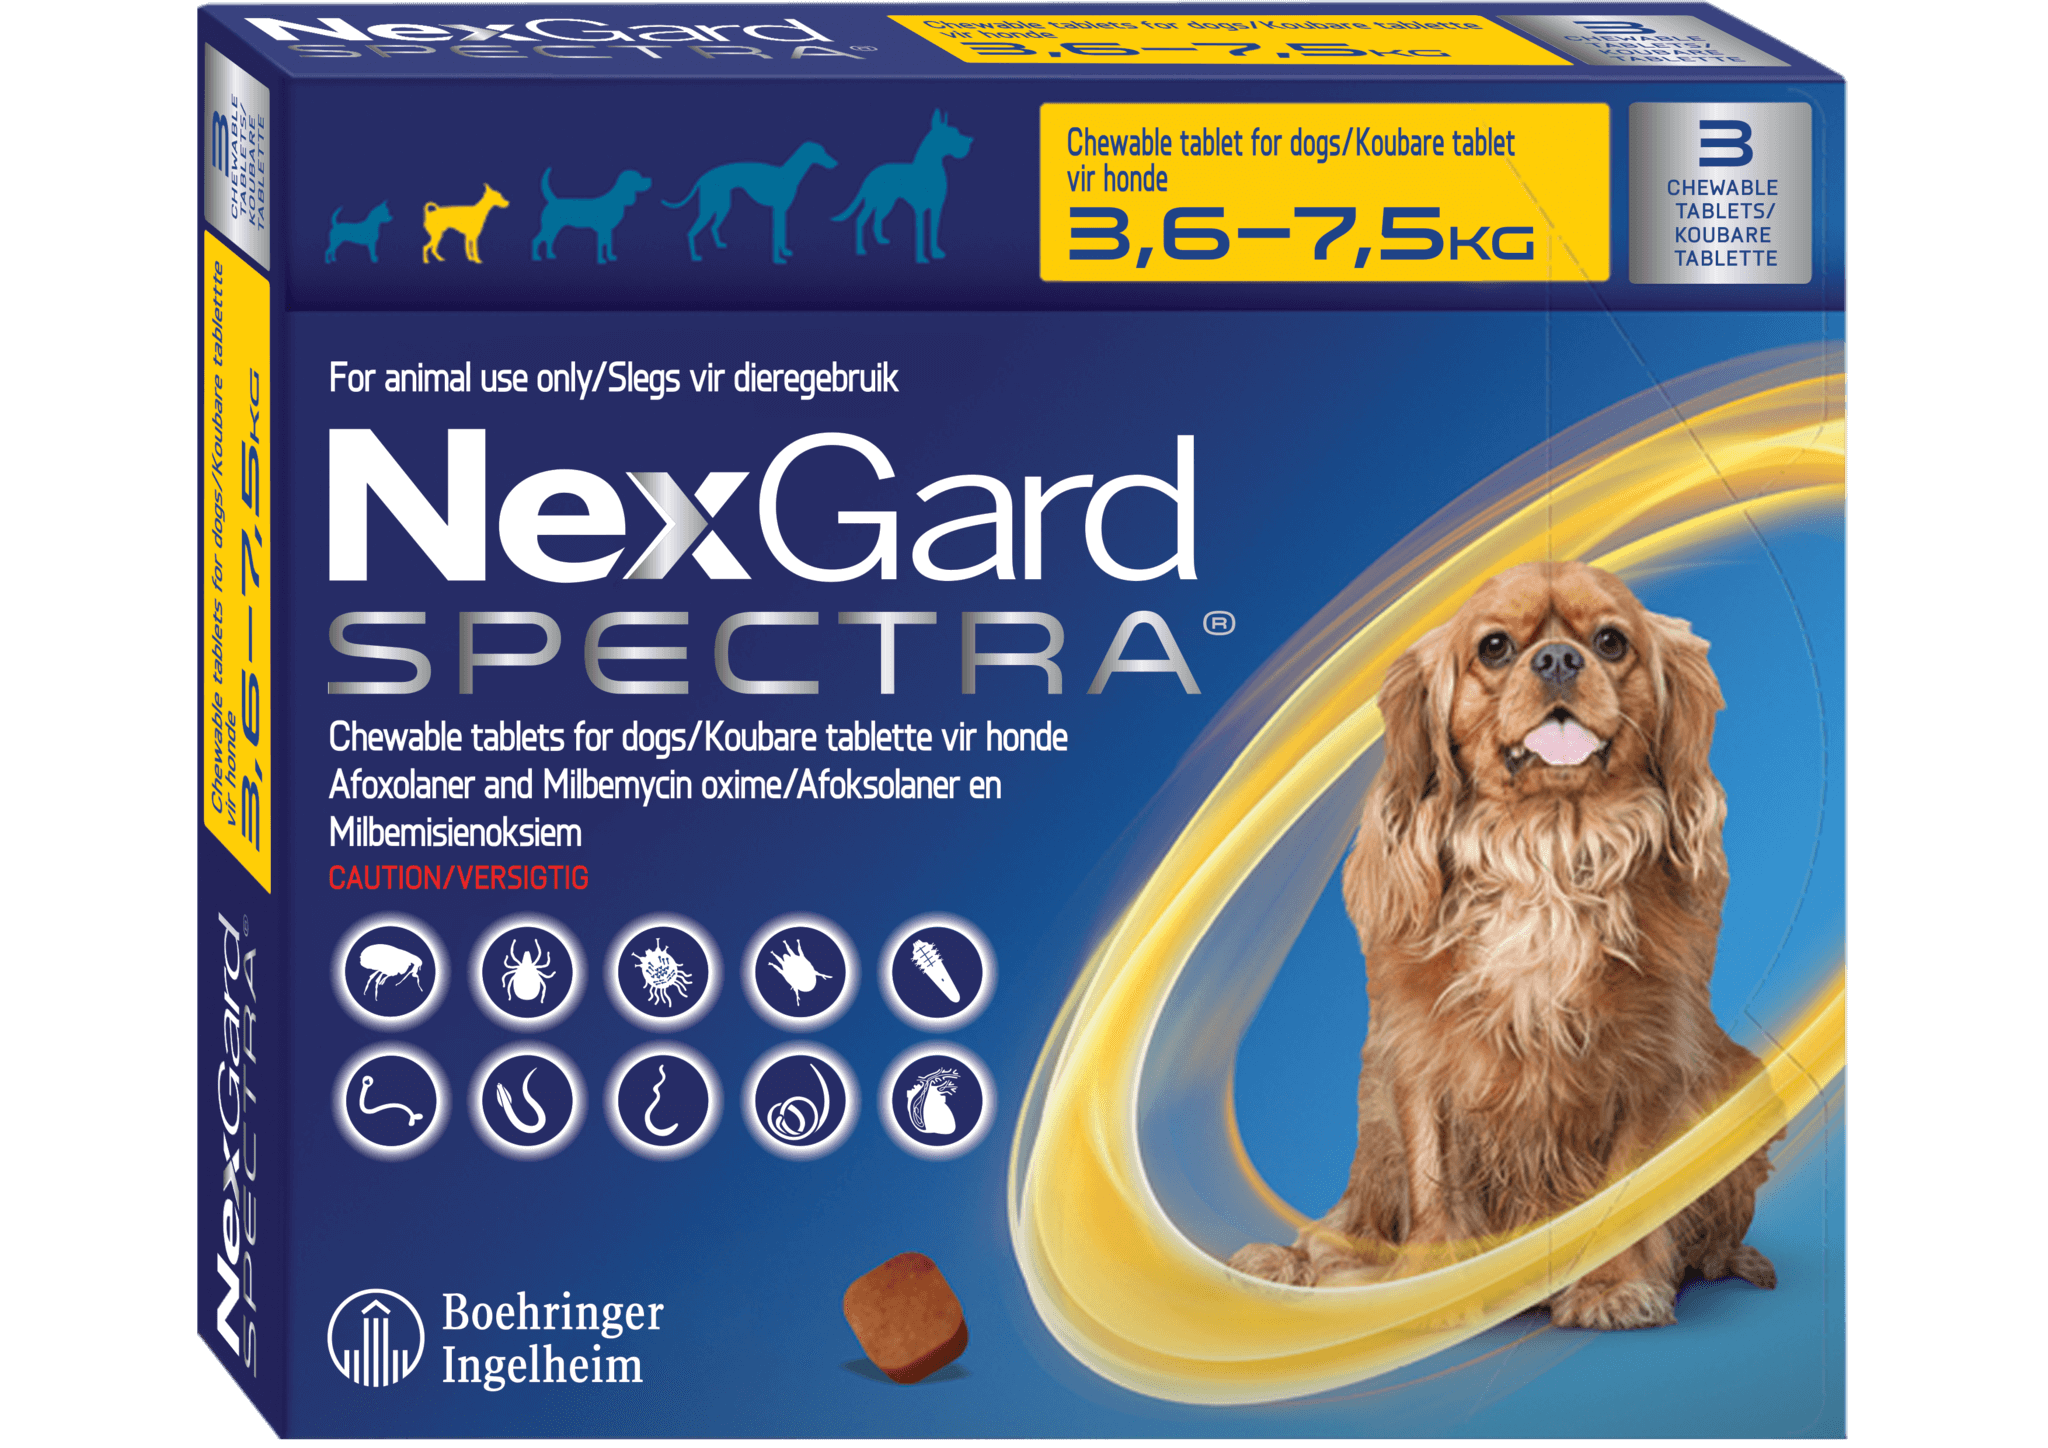 Нексгард для собак 2 4 кг. НЕКСГАРД спектра для собак 2-3.5 кг. НЕКСГАРД спектра для собак 3,5-7. НЕКСГАРД для собак 7.5. NEXGARD Spectra для собак.